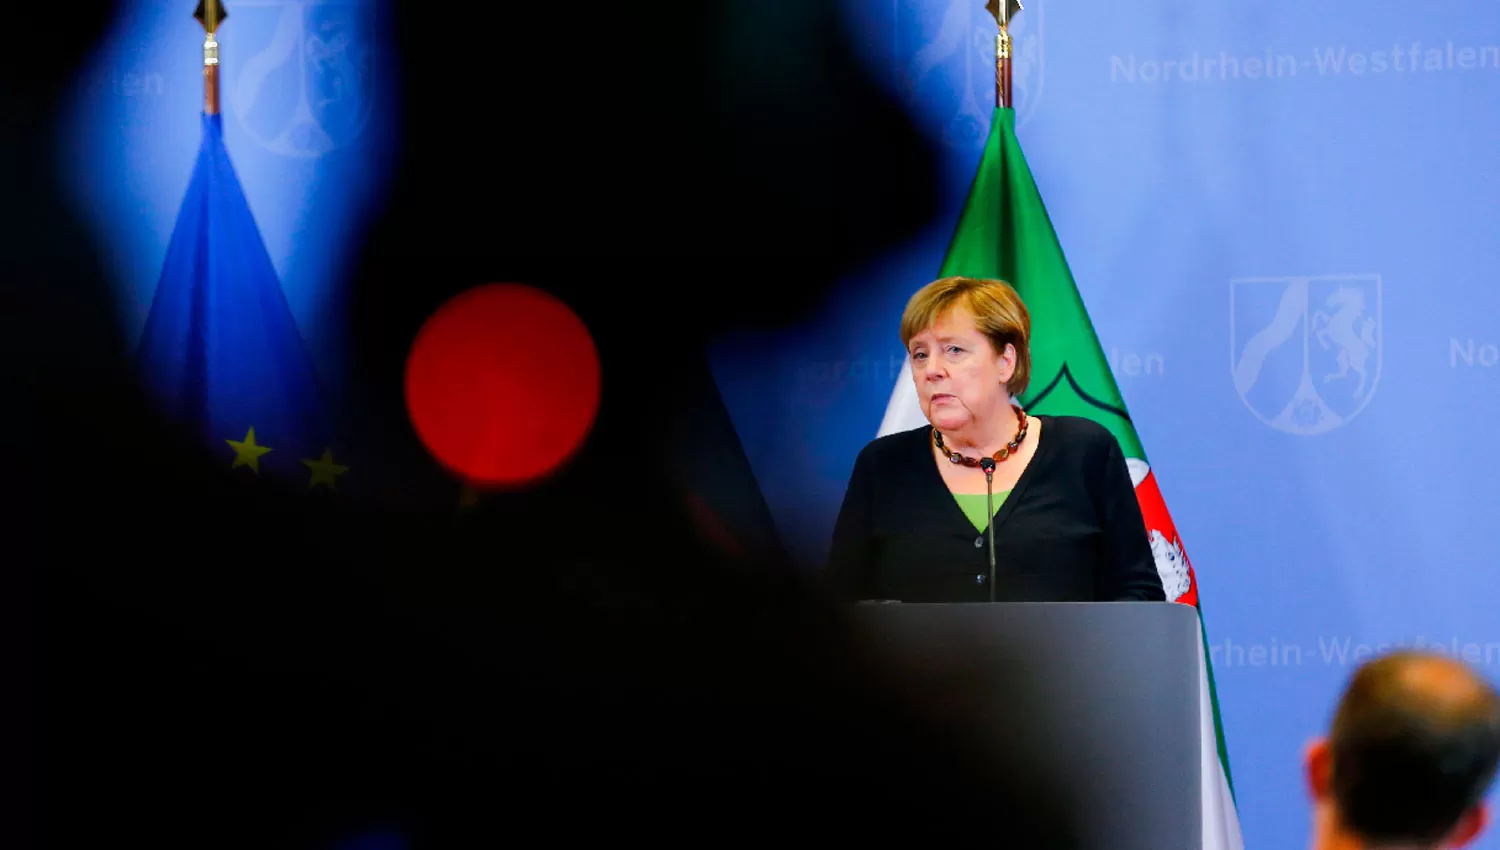 ¿ACEPTARÁ? Merkel se mostró abierta a las negociaciones con el grupo que tomó el poder en Afganistán.